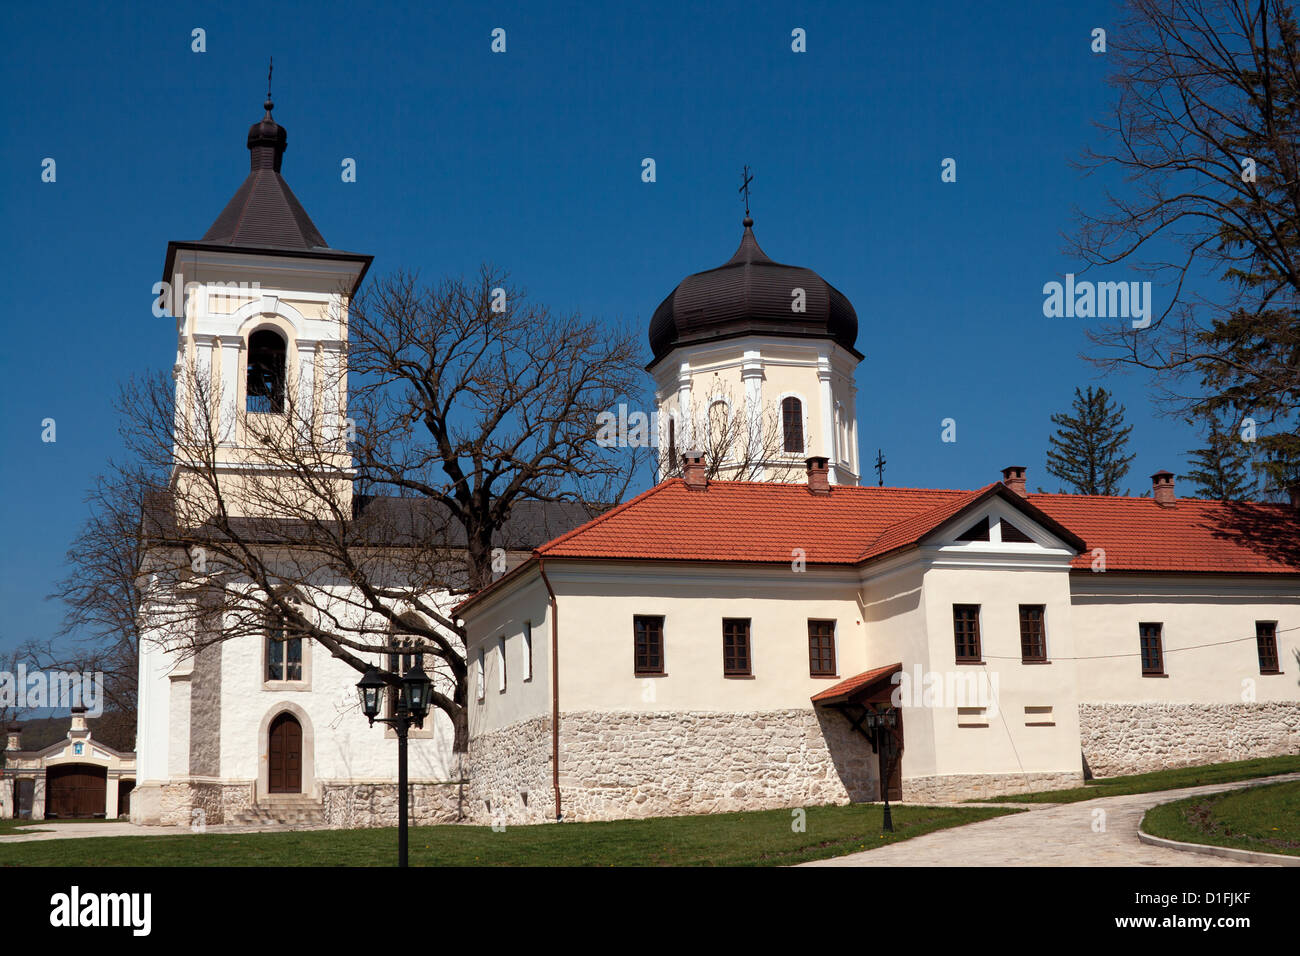 Capriana monastère, l'église de pierre, la Moldova. Le monastère de Capriana est situé dans un terrain vallonné une fois appelé Al Lapusnei. Banque D'Images